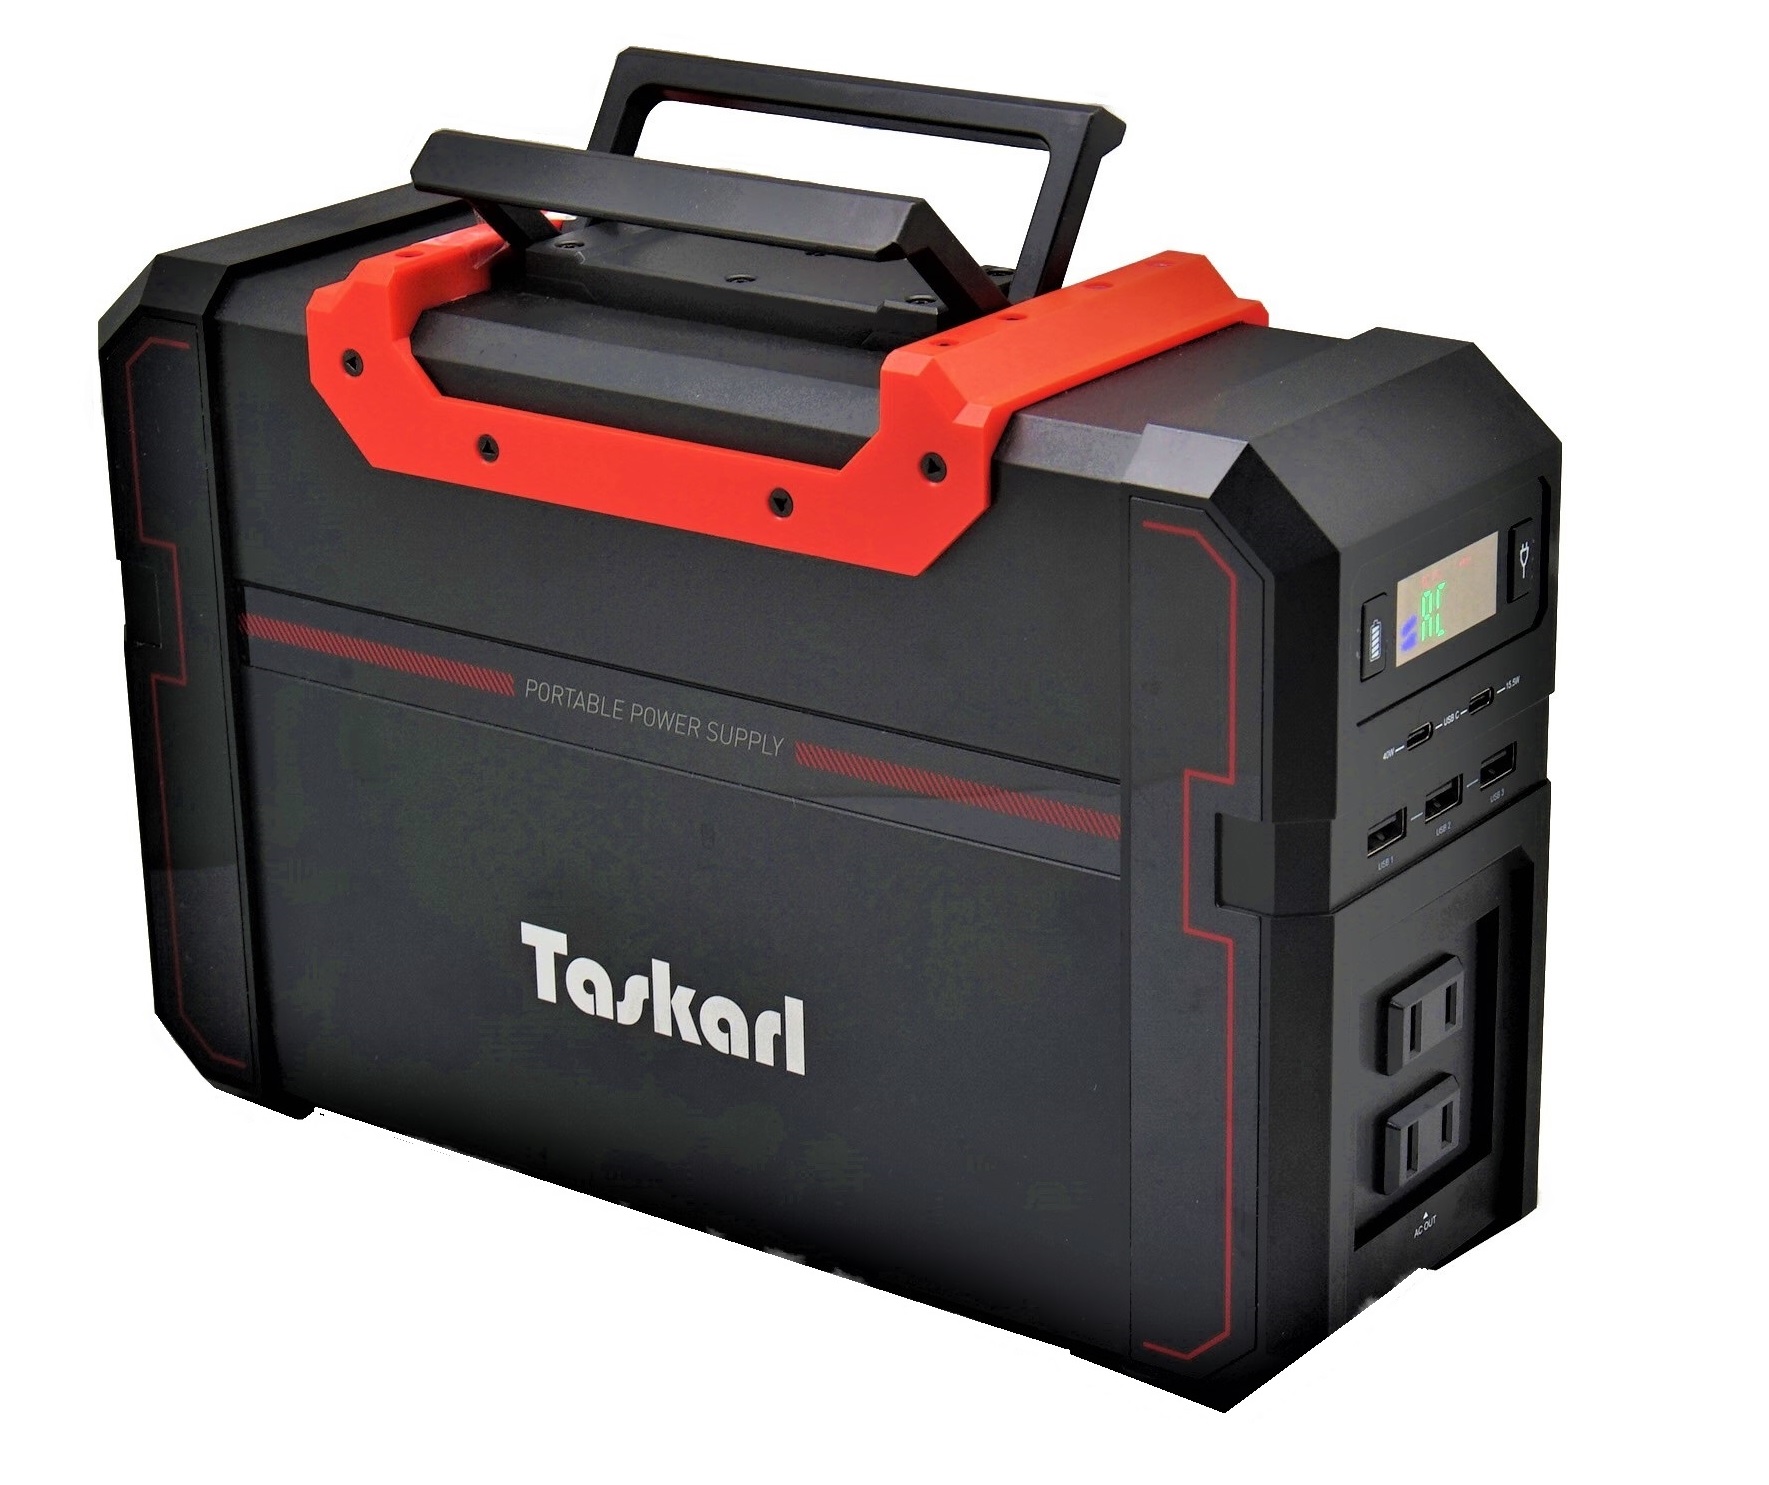 Taskarl TPD-S450